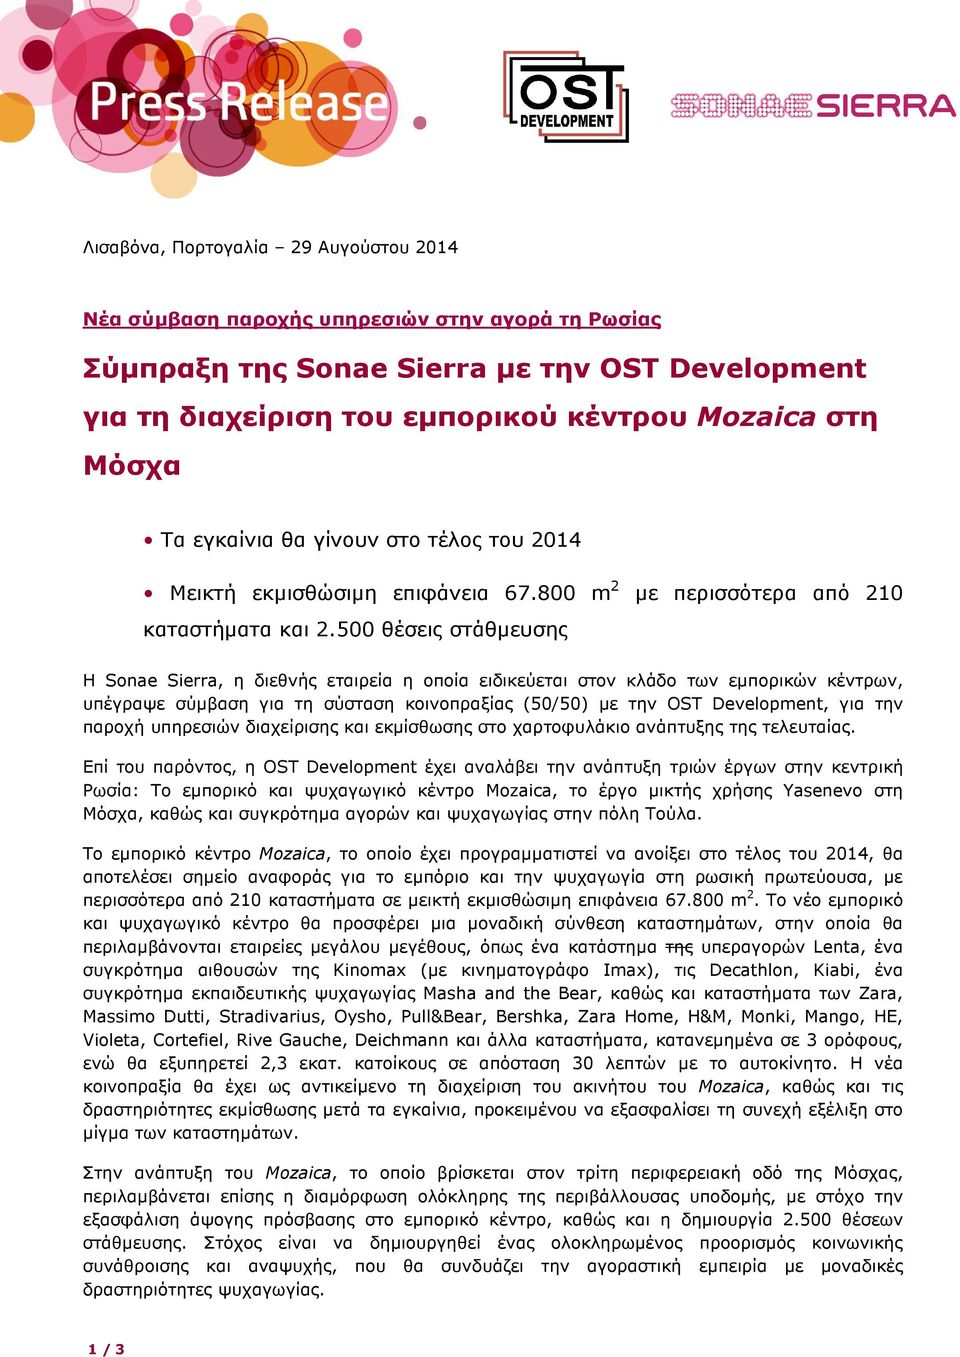 500 θέσεις στάθµευσης Η Sonae Sierra, η διεθνής εταιρεία η οποία ειδικεύεται στον κλάδο των εµπορικών κέντρων, υπέγραψε σύµβαση για τη σύσταση κοινοπραξίας (50/50) µε την OST Development, για την